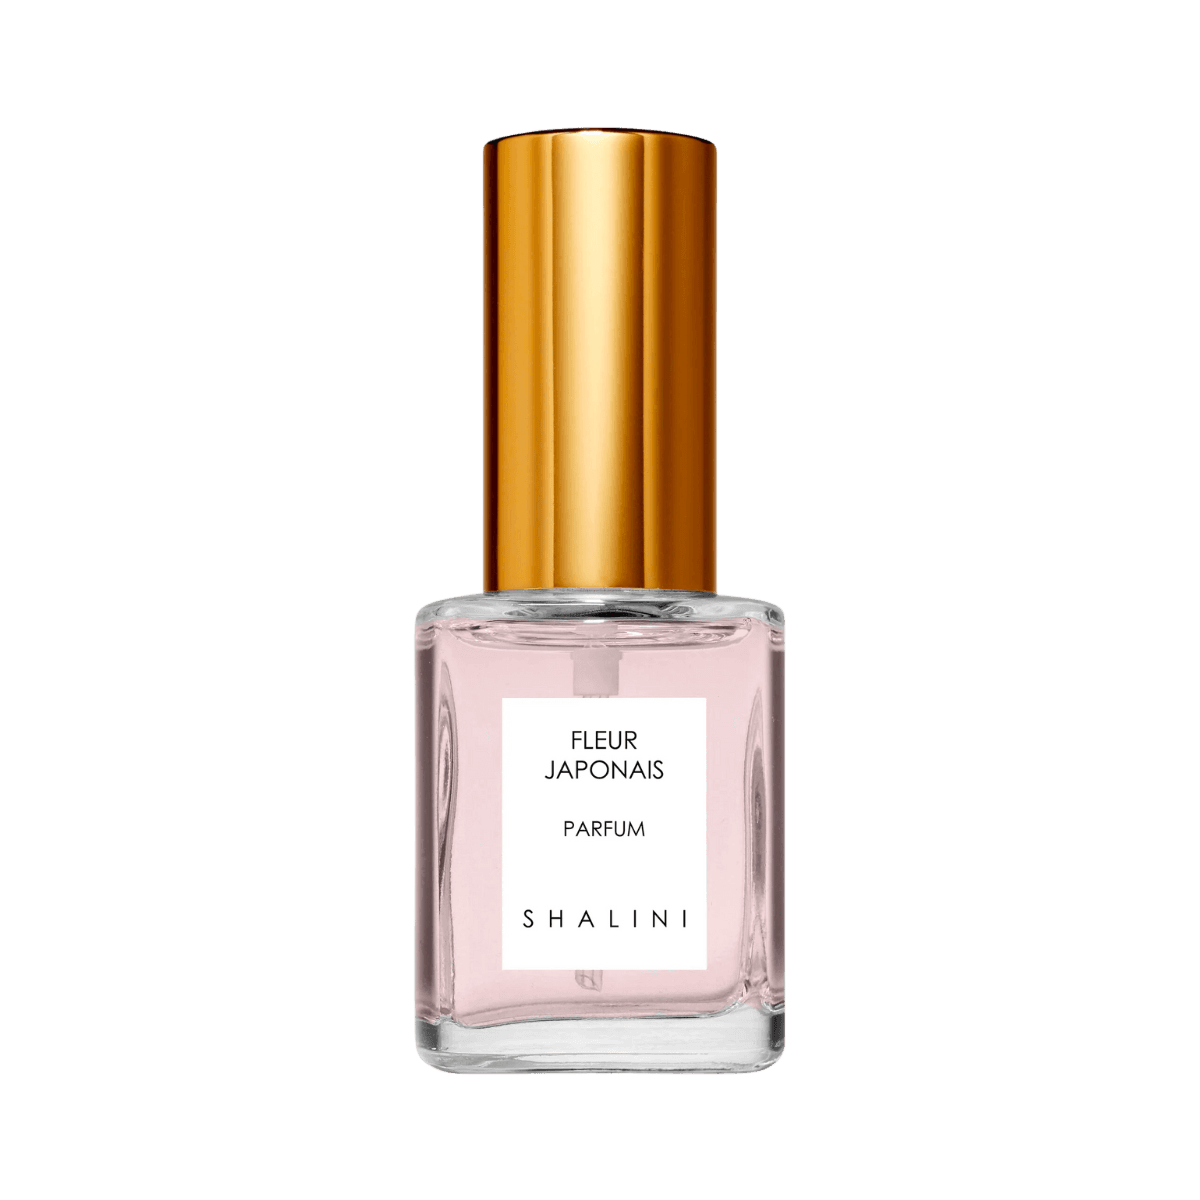 Image of Fleur Japonais extrait de parfum by the perfume brand Shalini